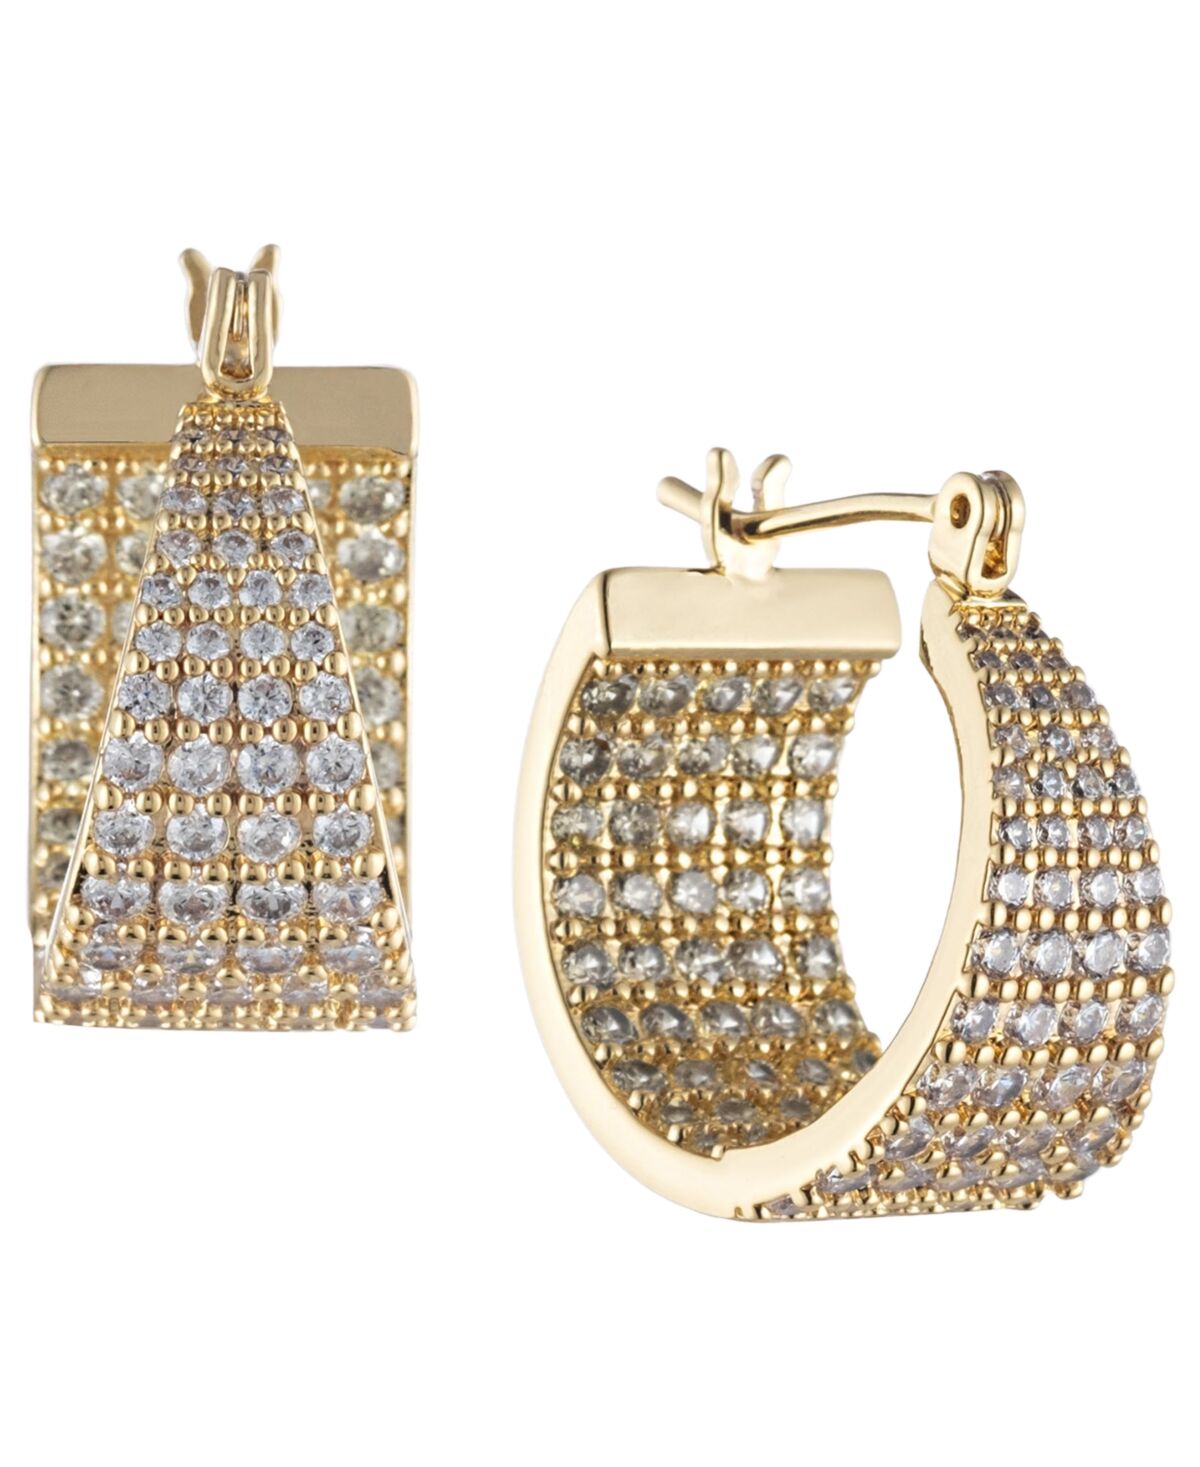 Bonheur Jewelry Monet Crystal Inside Out Hoop Earrings - Karat Gold Plated Brass